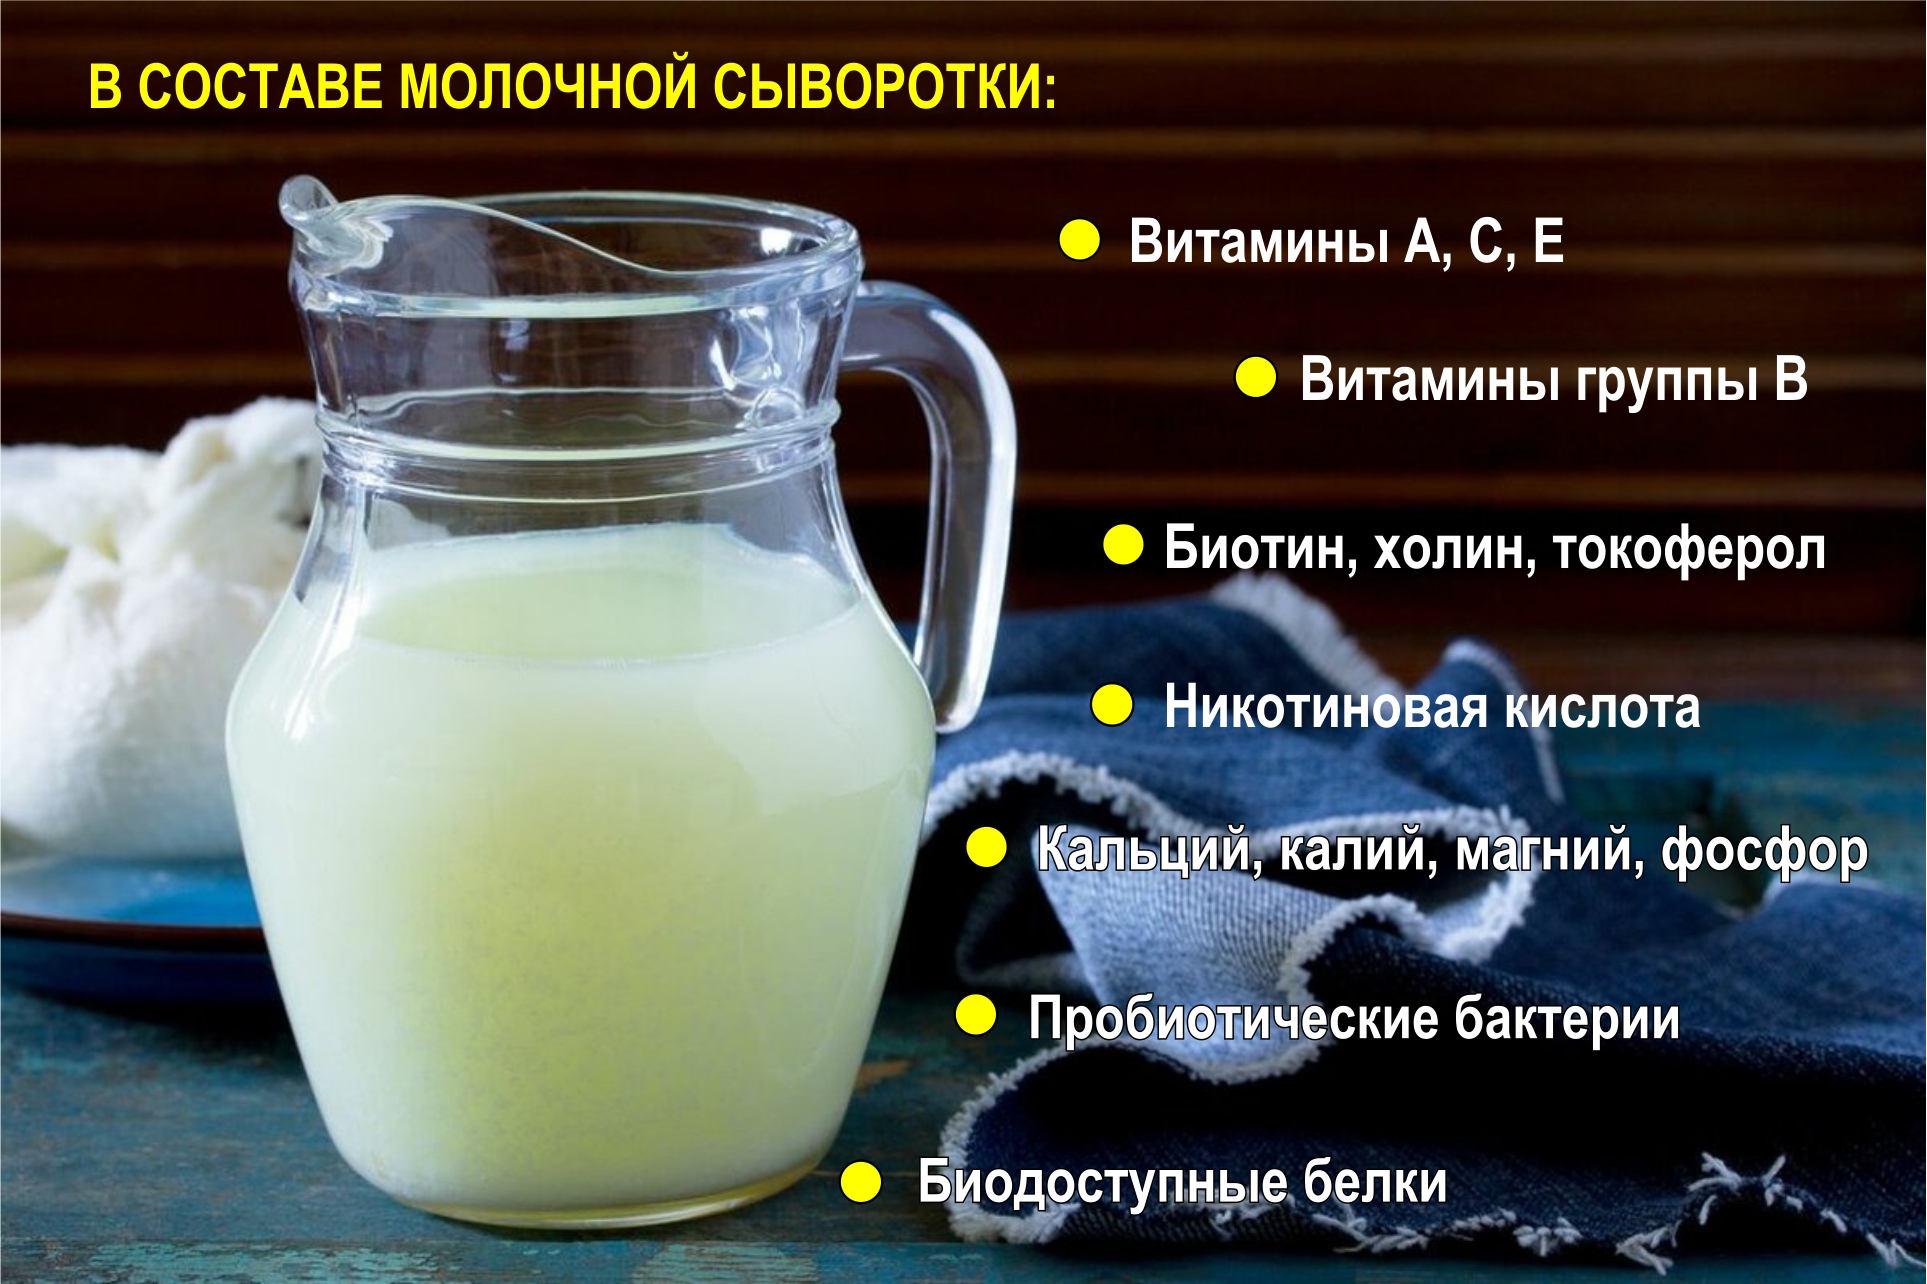 Кабардинское молоко